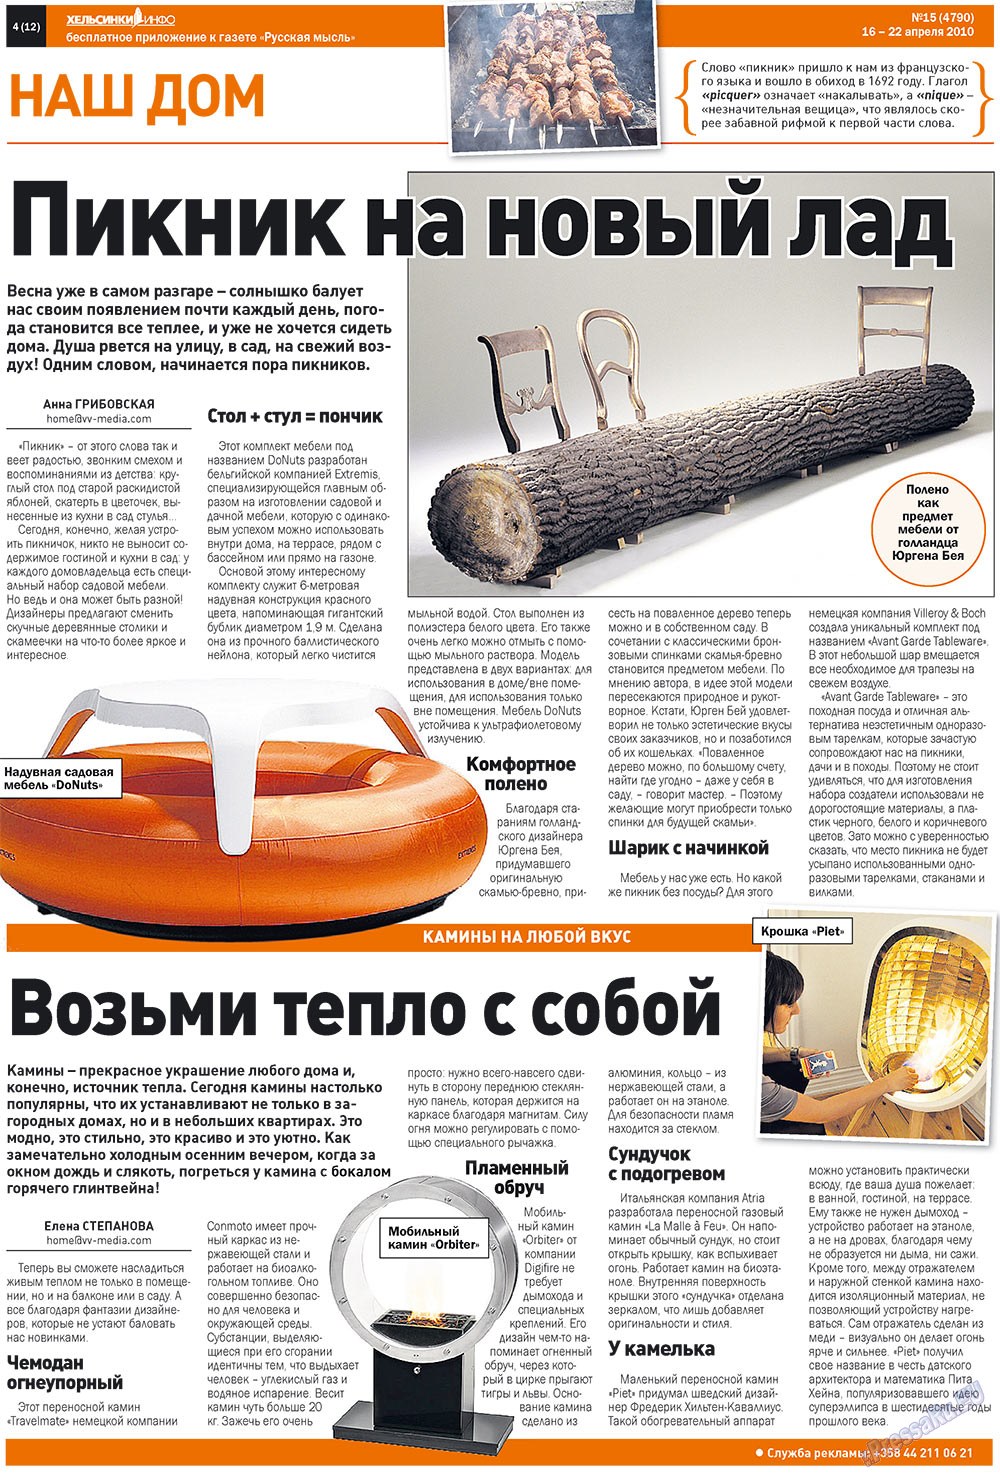 Русская Мысль (газета). 2010 год, номер 15, стр. 36